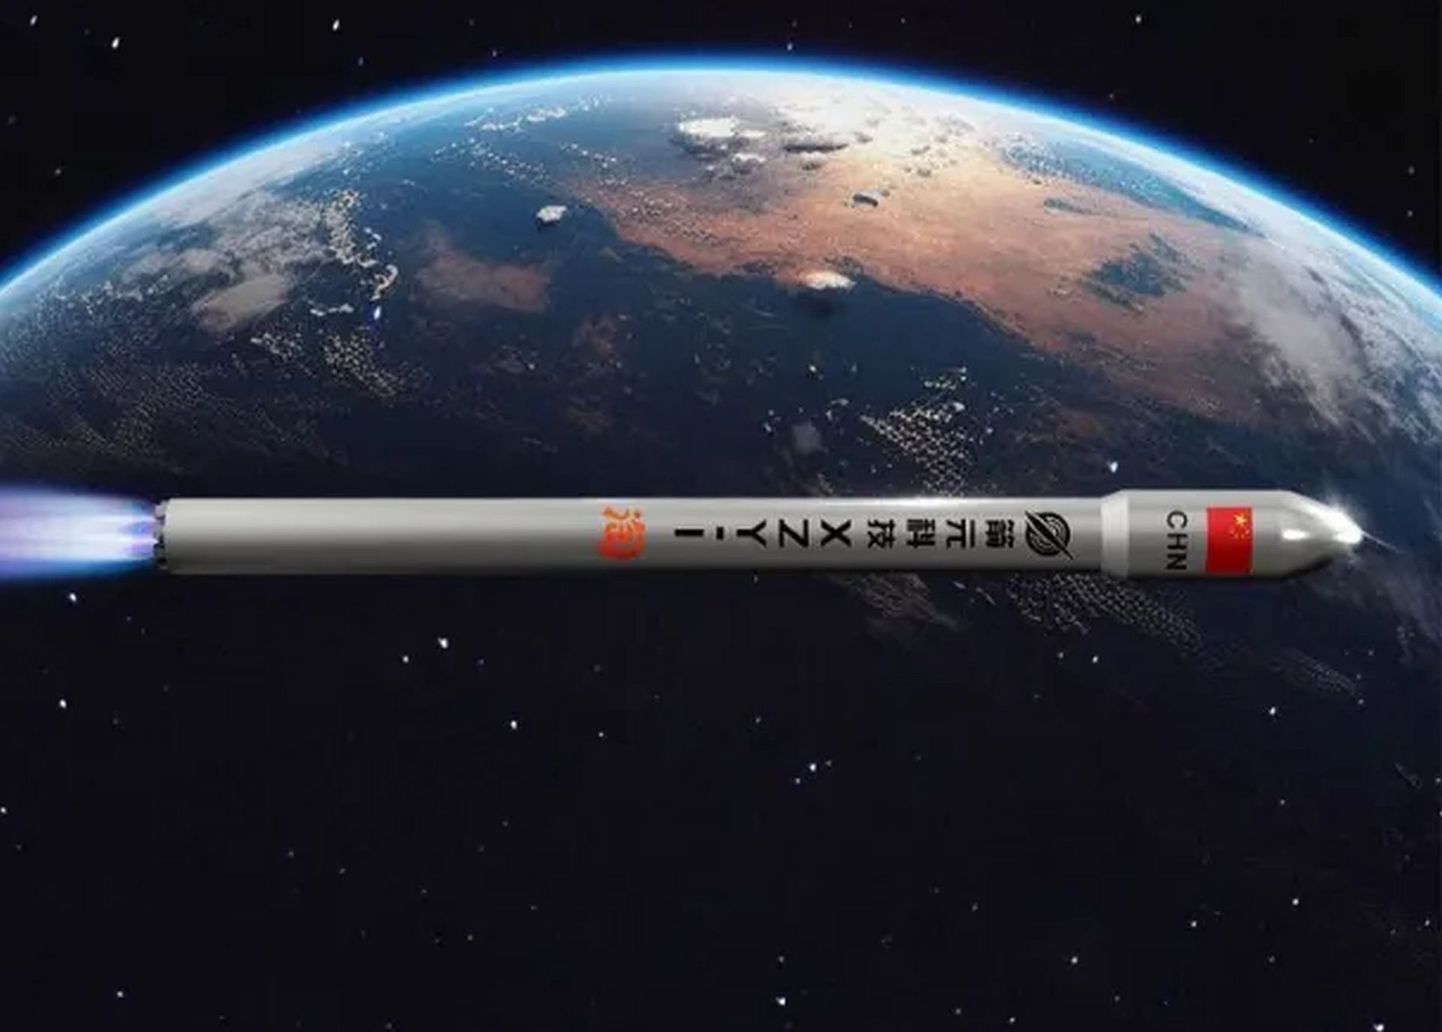 Postiljonid kosmoses: Hiina suurimad e-kaubanduse tegijad tahavad rakettidega saadetisi ülikiirelt kohale tuua, ükskõik kus maailma nurgas sa siis ka ei asuks. Pildil kujutis Tabao vastavalt plakatilt.